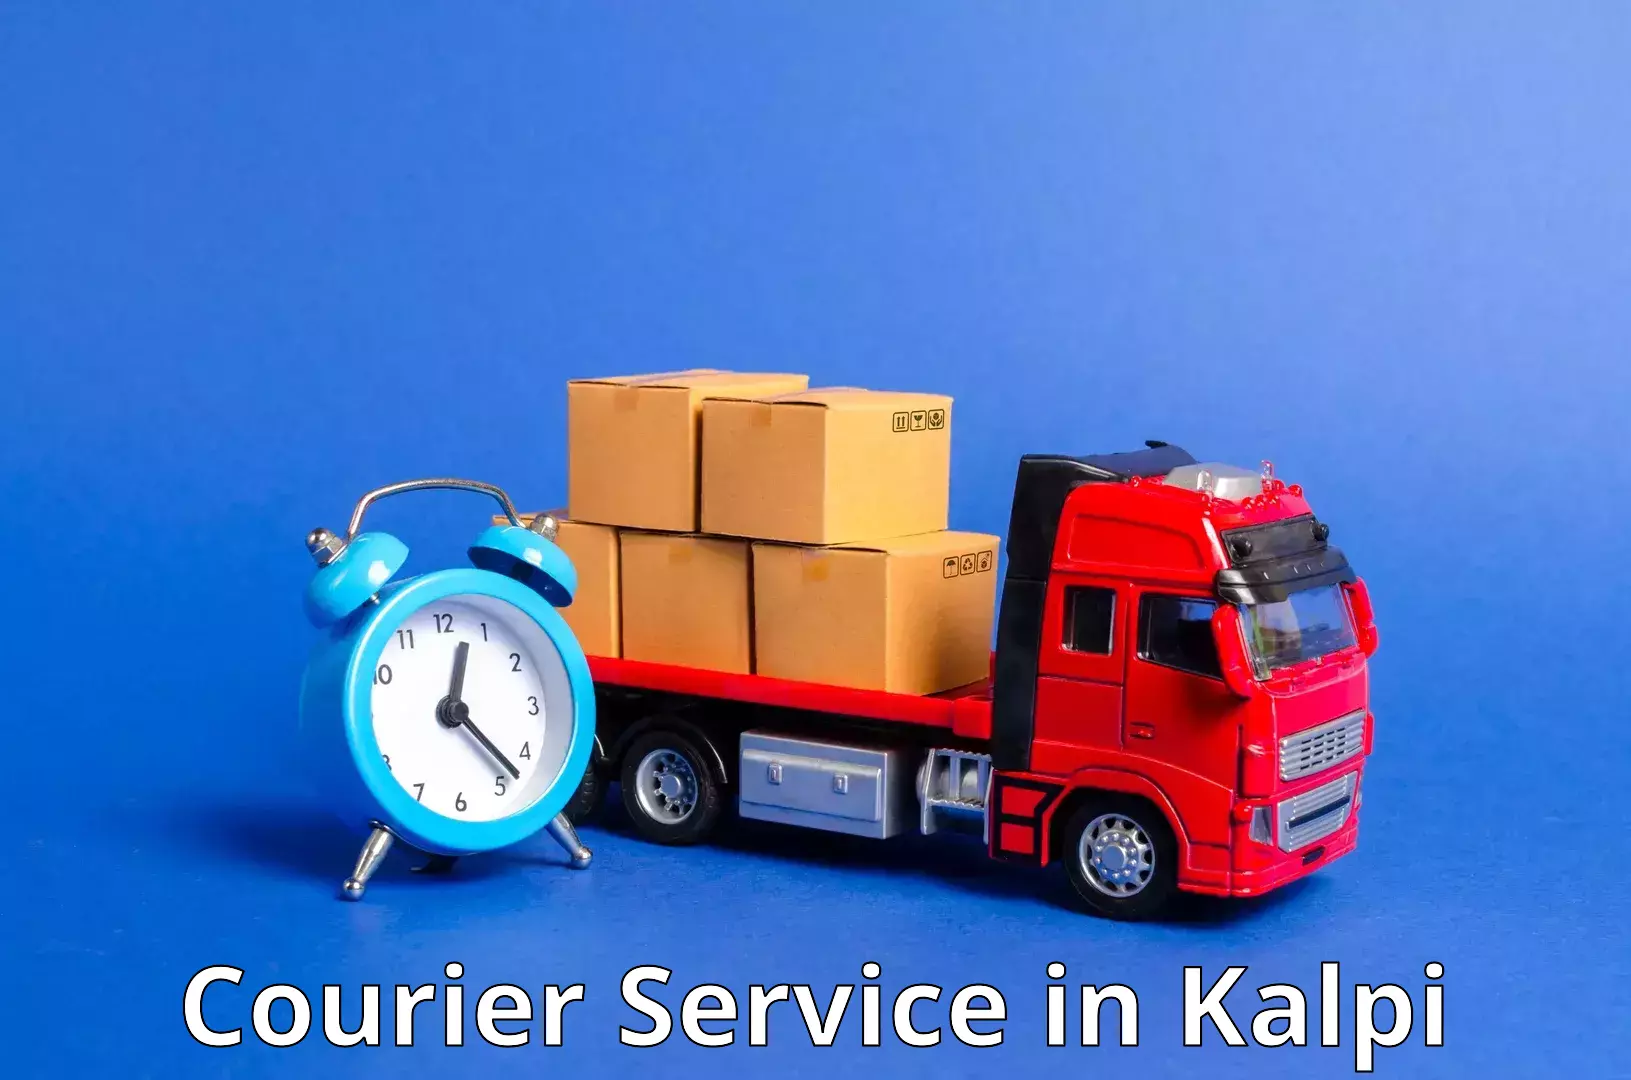 Customer-centric shipping in Kalpi